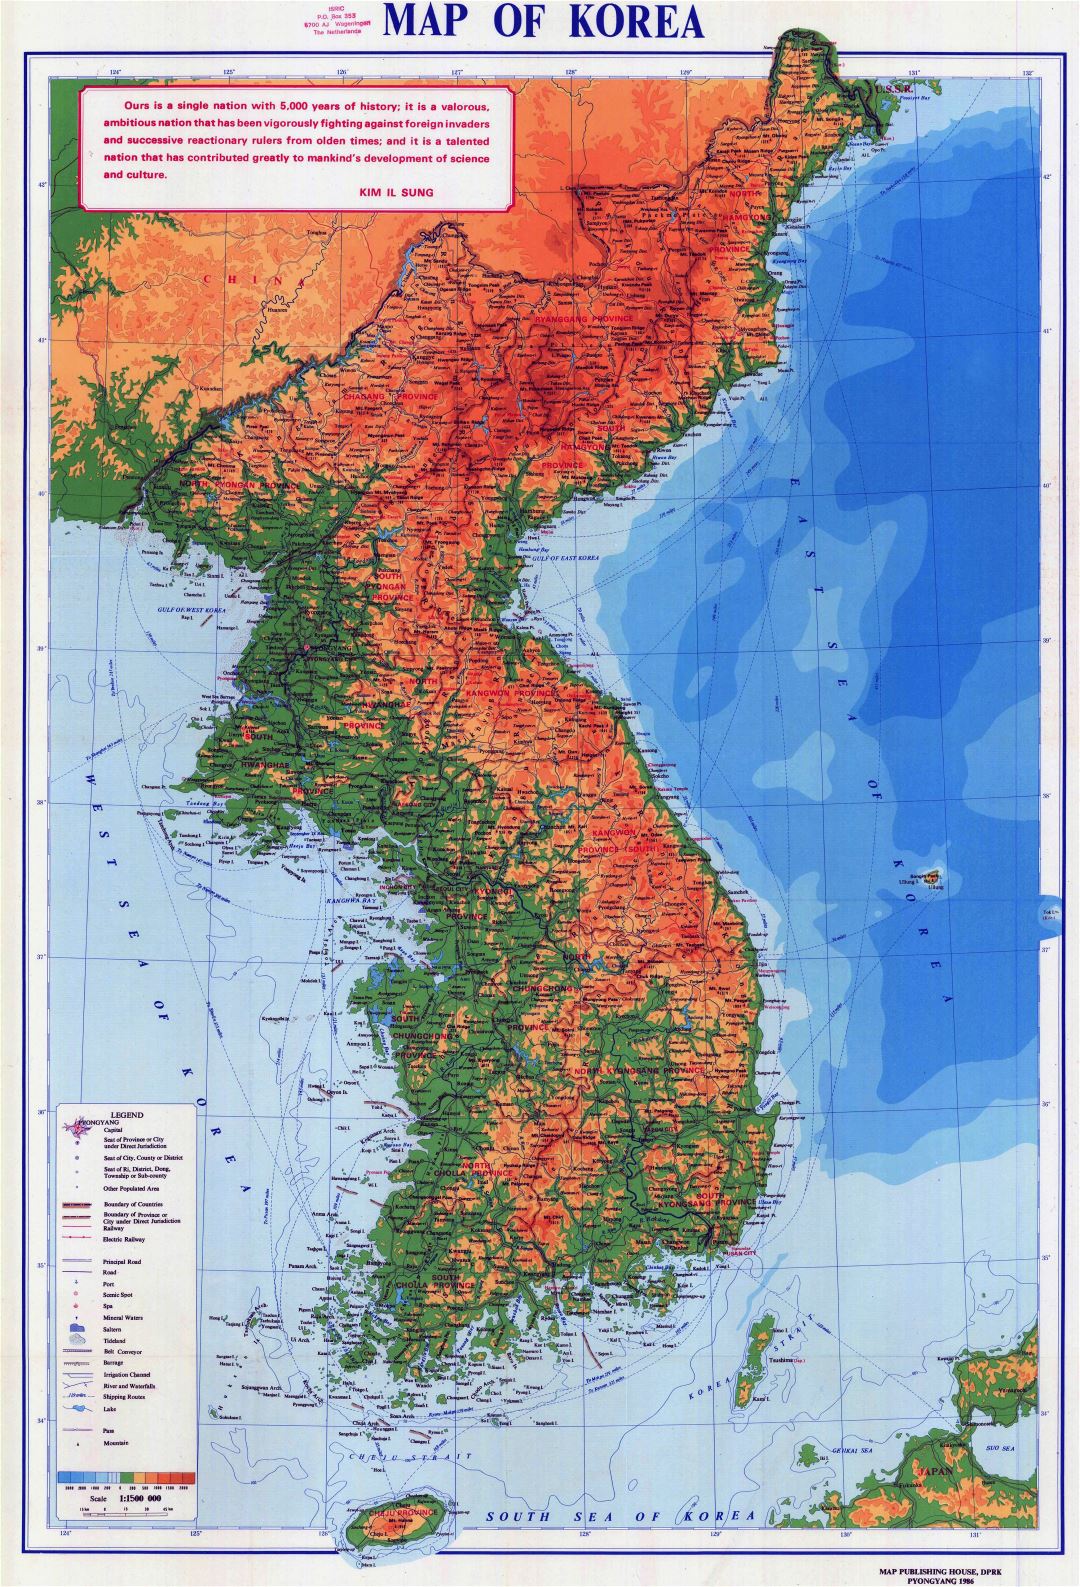 Grande detallado mapa físico de Península de Corea con carreteras, ciudades y otras marcas